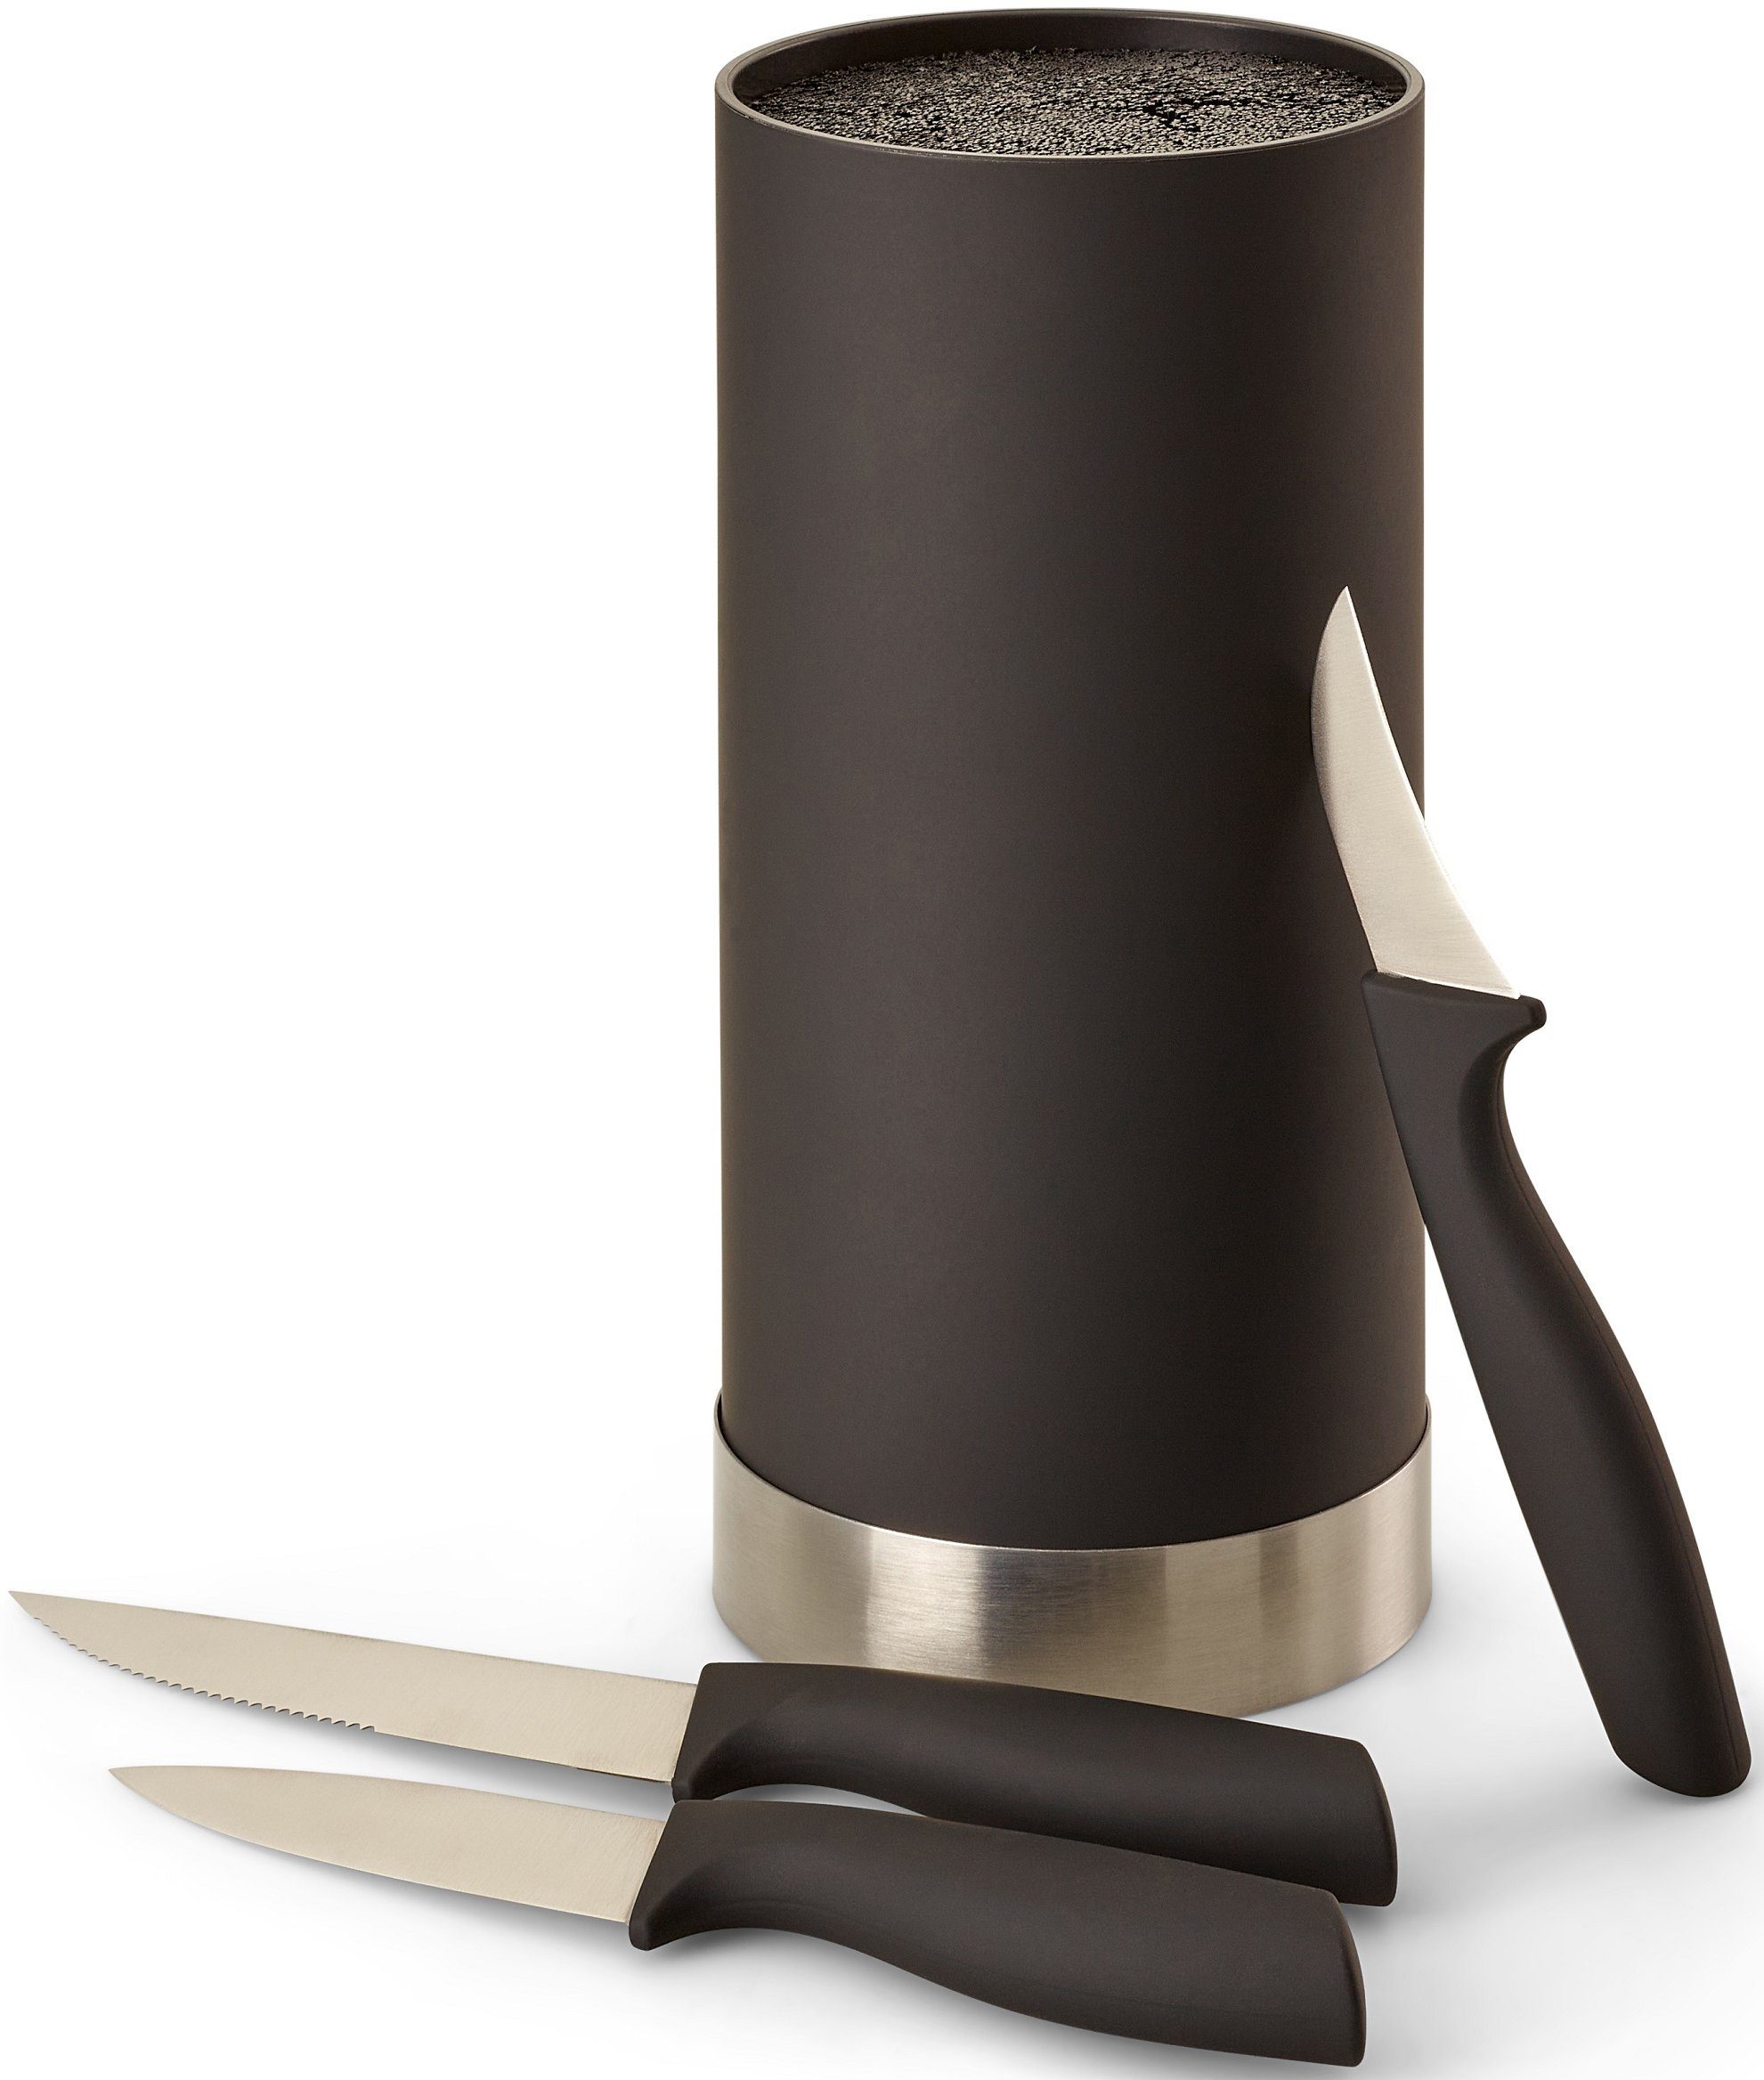 ECHTWERK Messerblock, Messer Set 4tlg mit Borsteneinsatz 11 cm x 22 cm, inkl. 3 Kochmessern schwarz/silberfarben